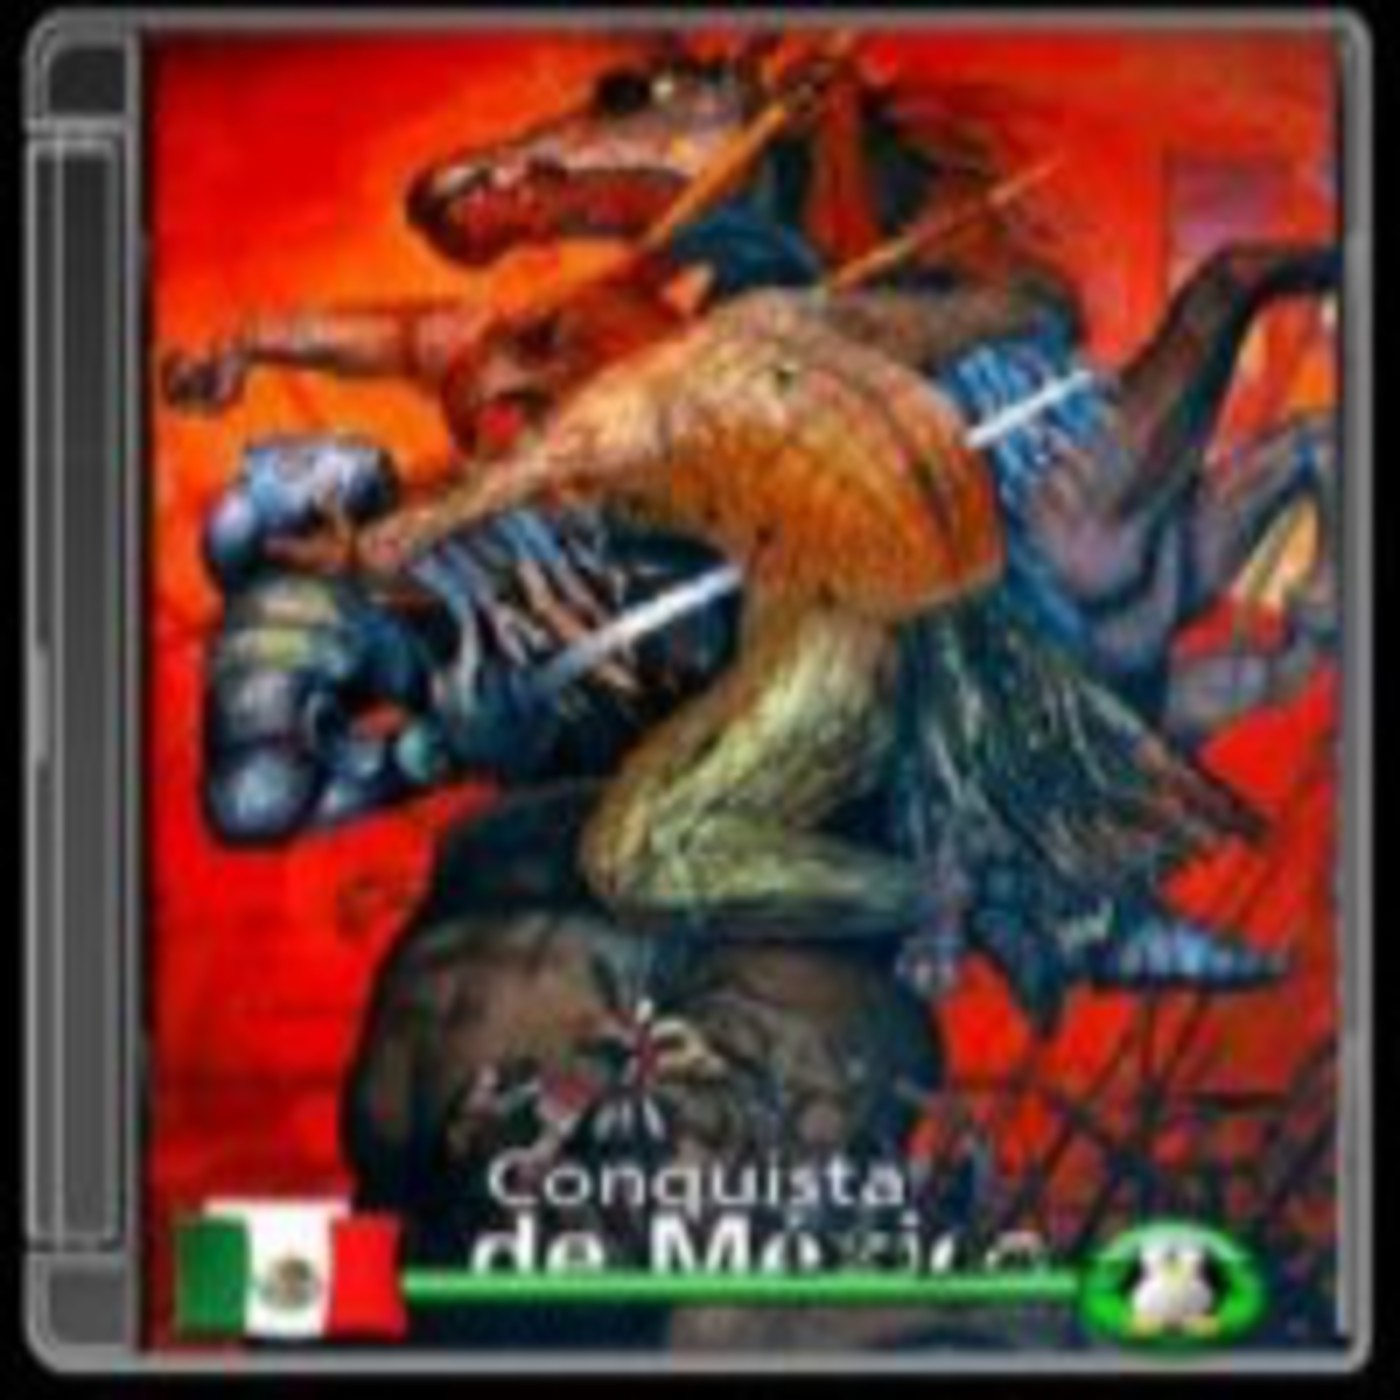 La Conquista de México.Capitulo 2 Moctezuma Xocoyotzin